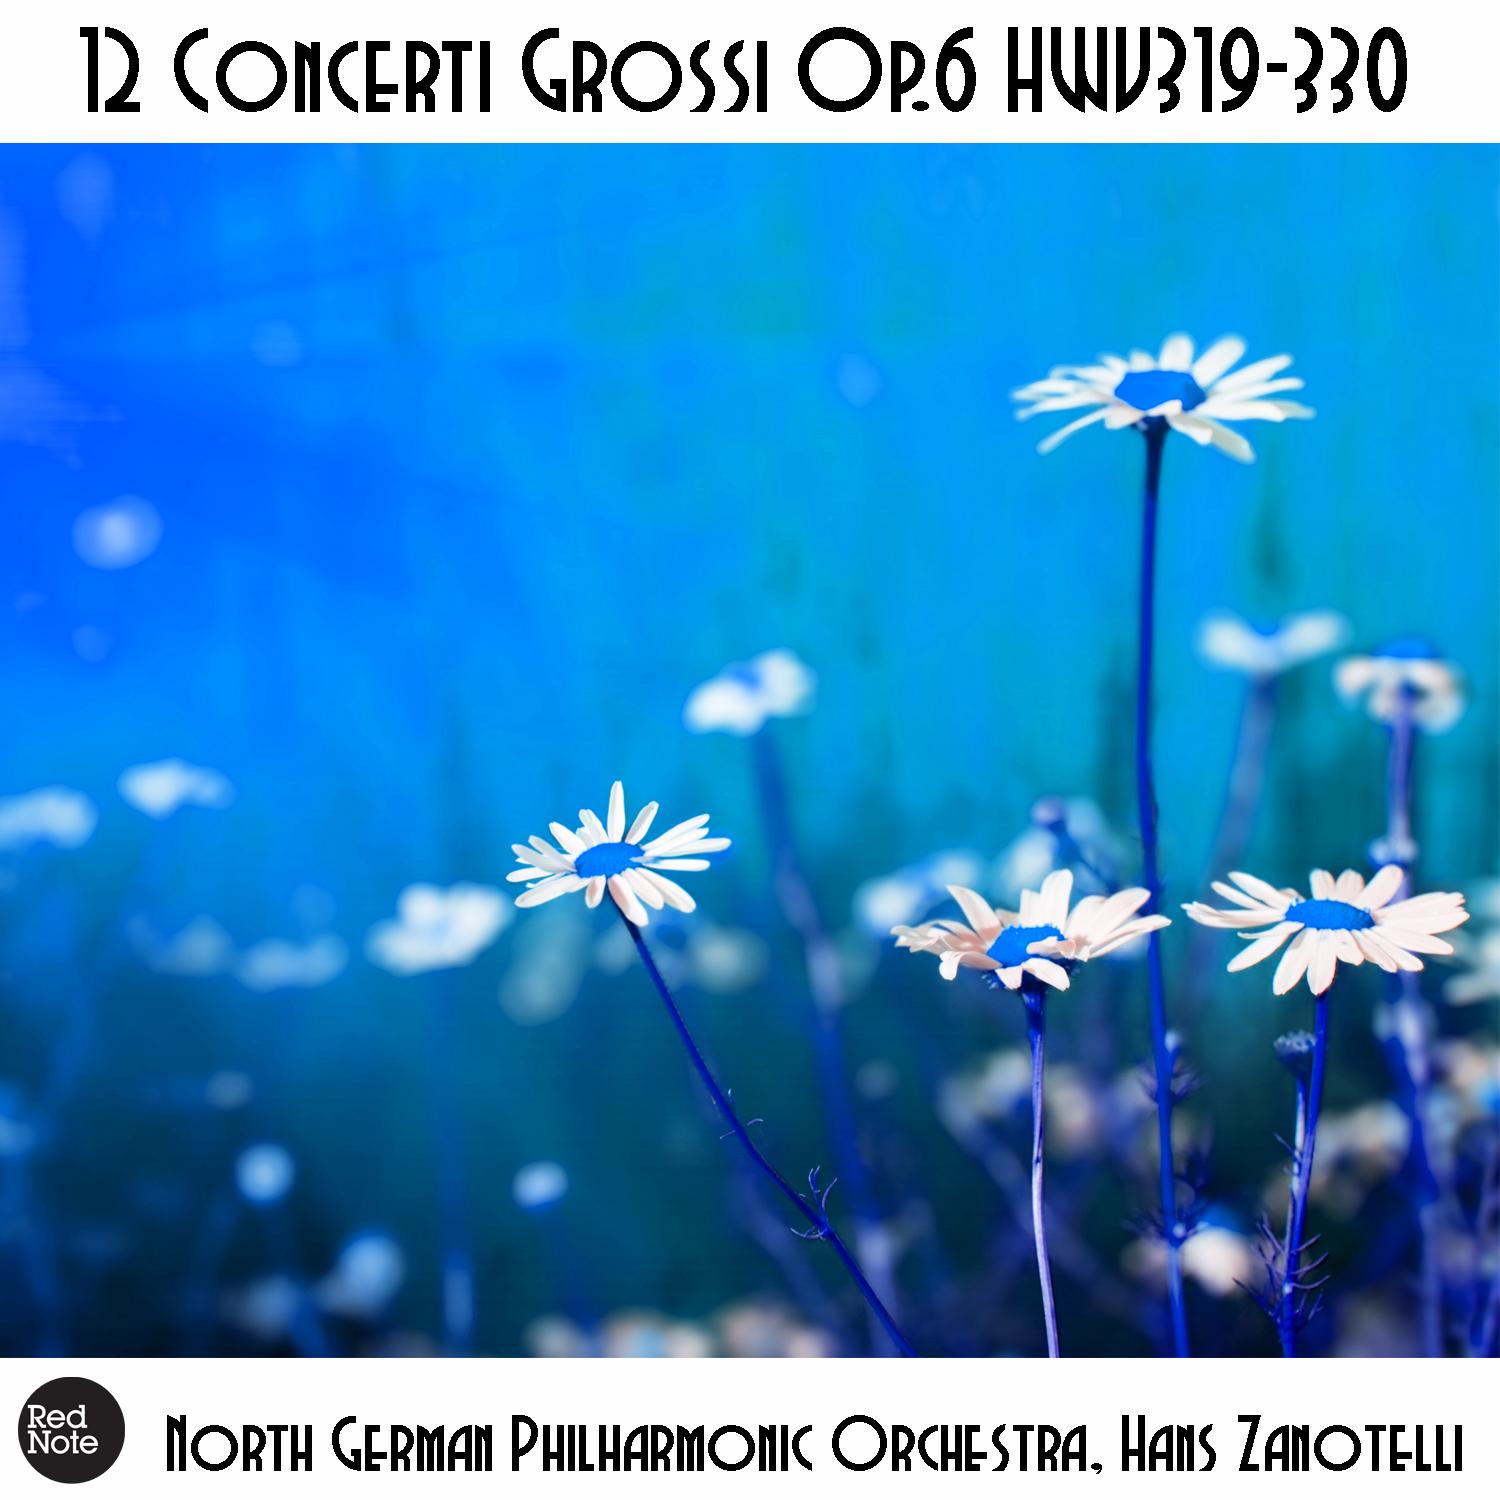 Concerti Grossi No. 3, Op. 6 HWV321: V. Allegro ma non troppo